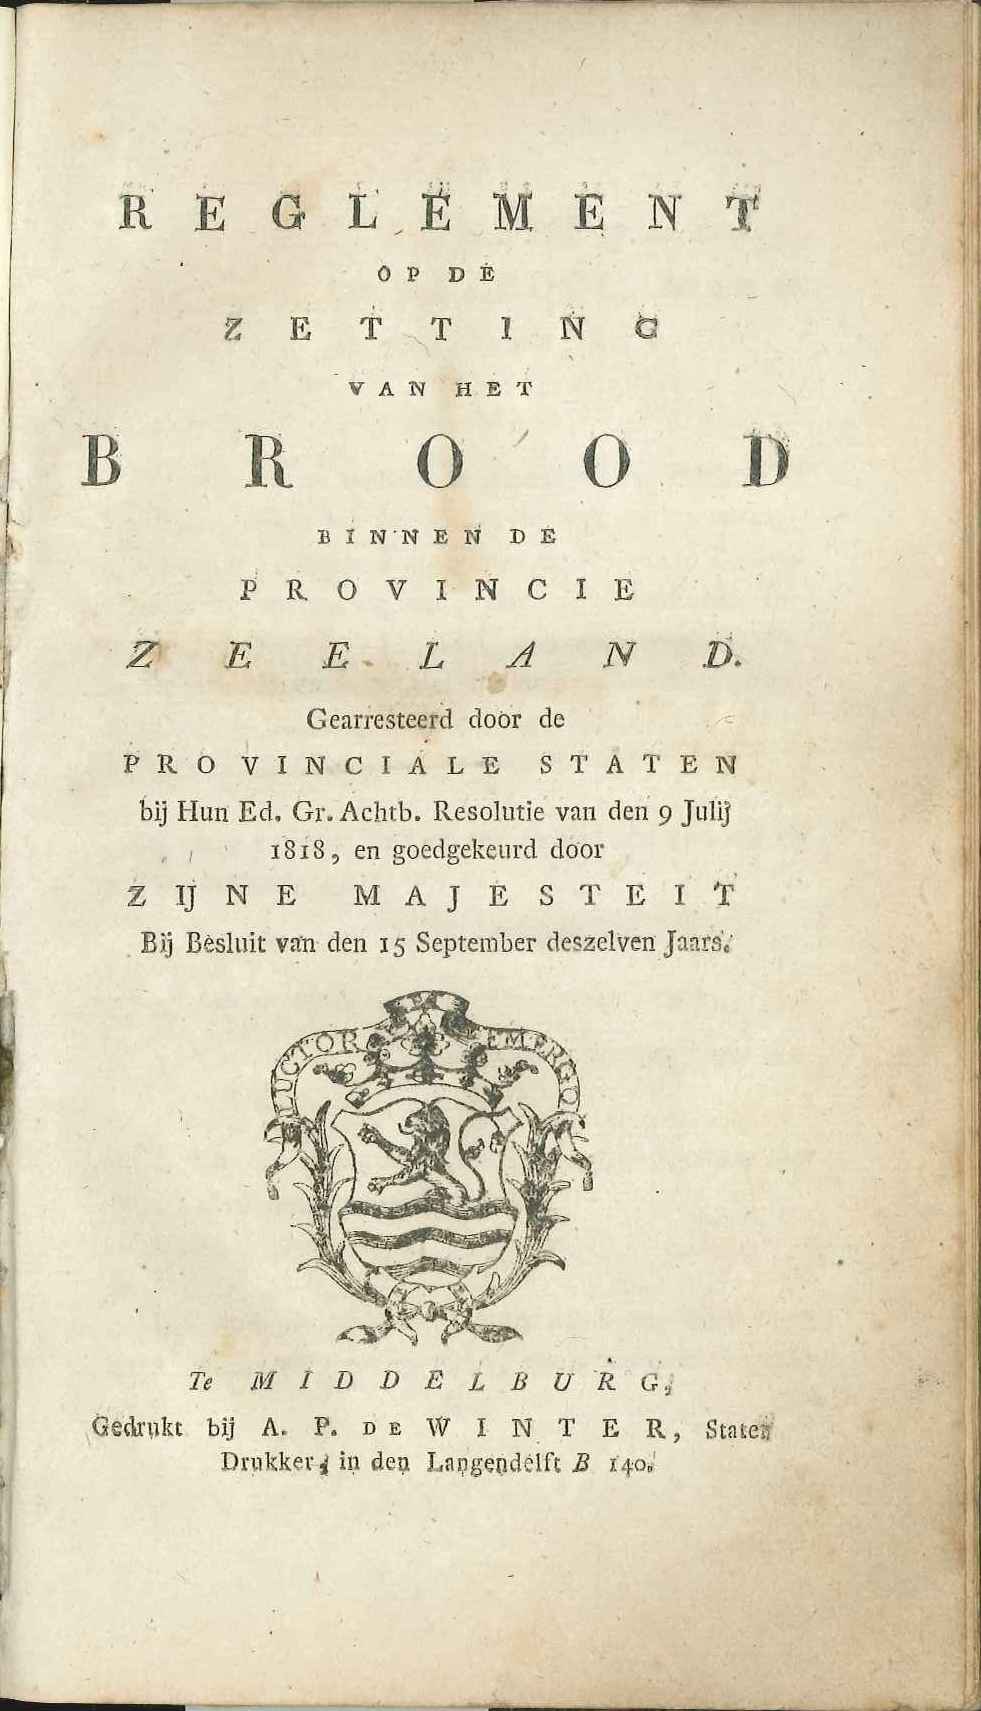 Reglement op het vaststellen van de broodprijs, 1818.